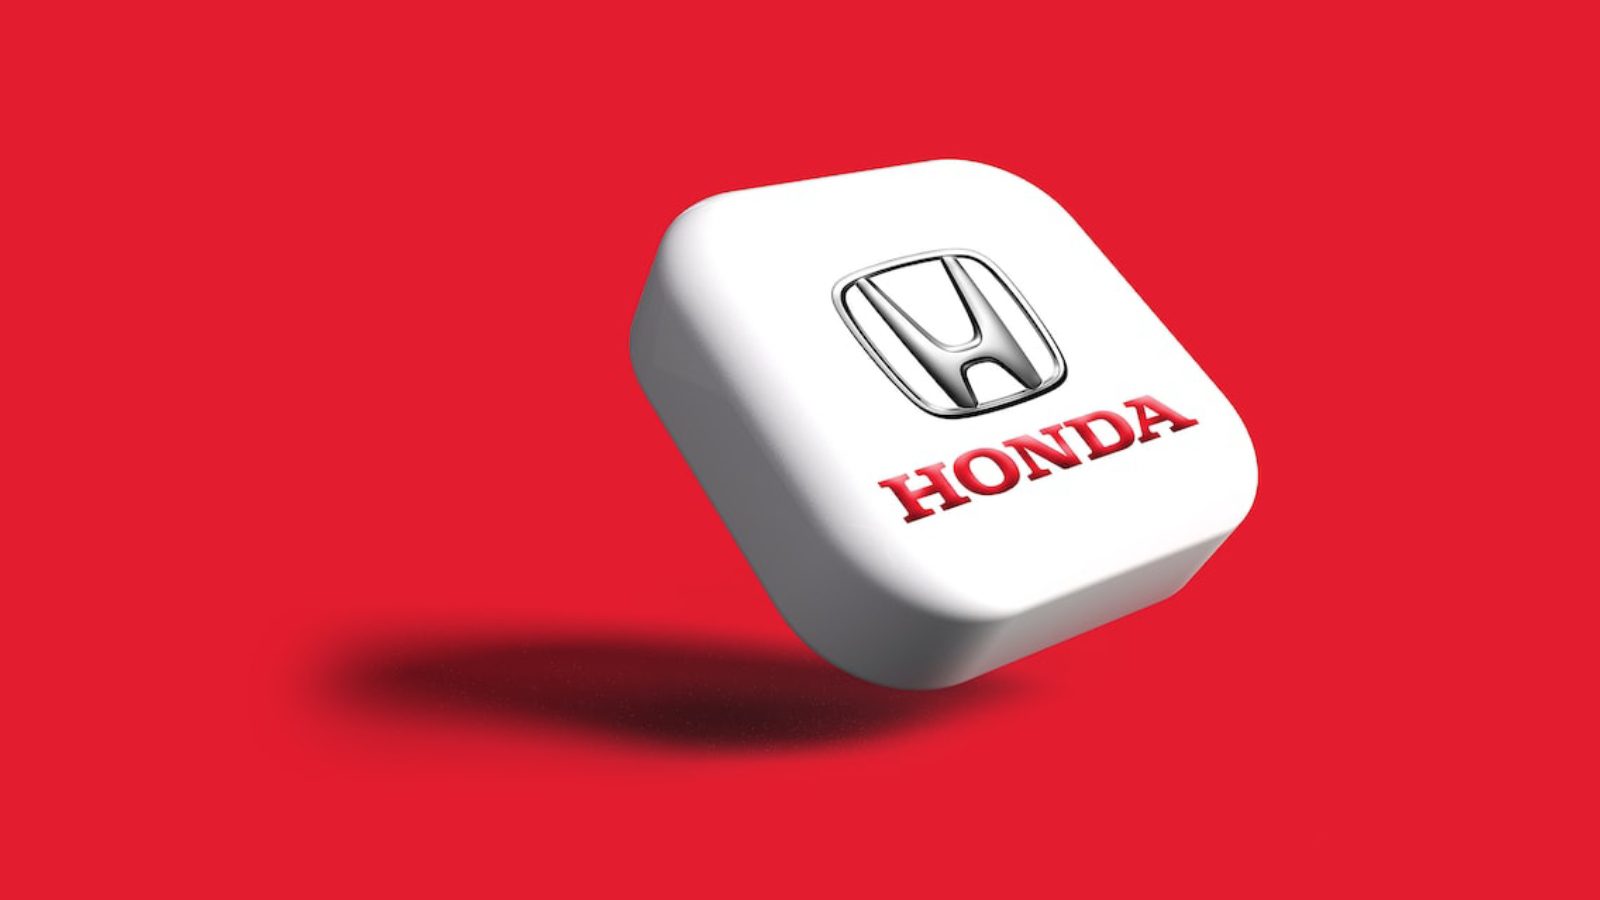 30 электромобилей Honda под торговой маркой Afeela будут выпущены к 2030 году